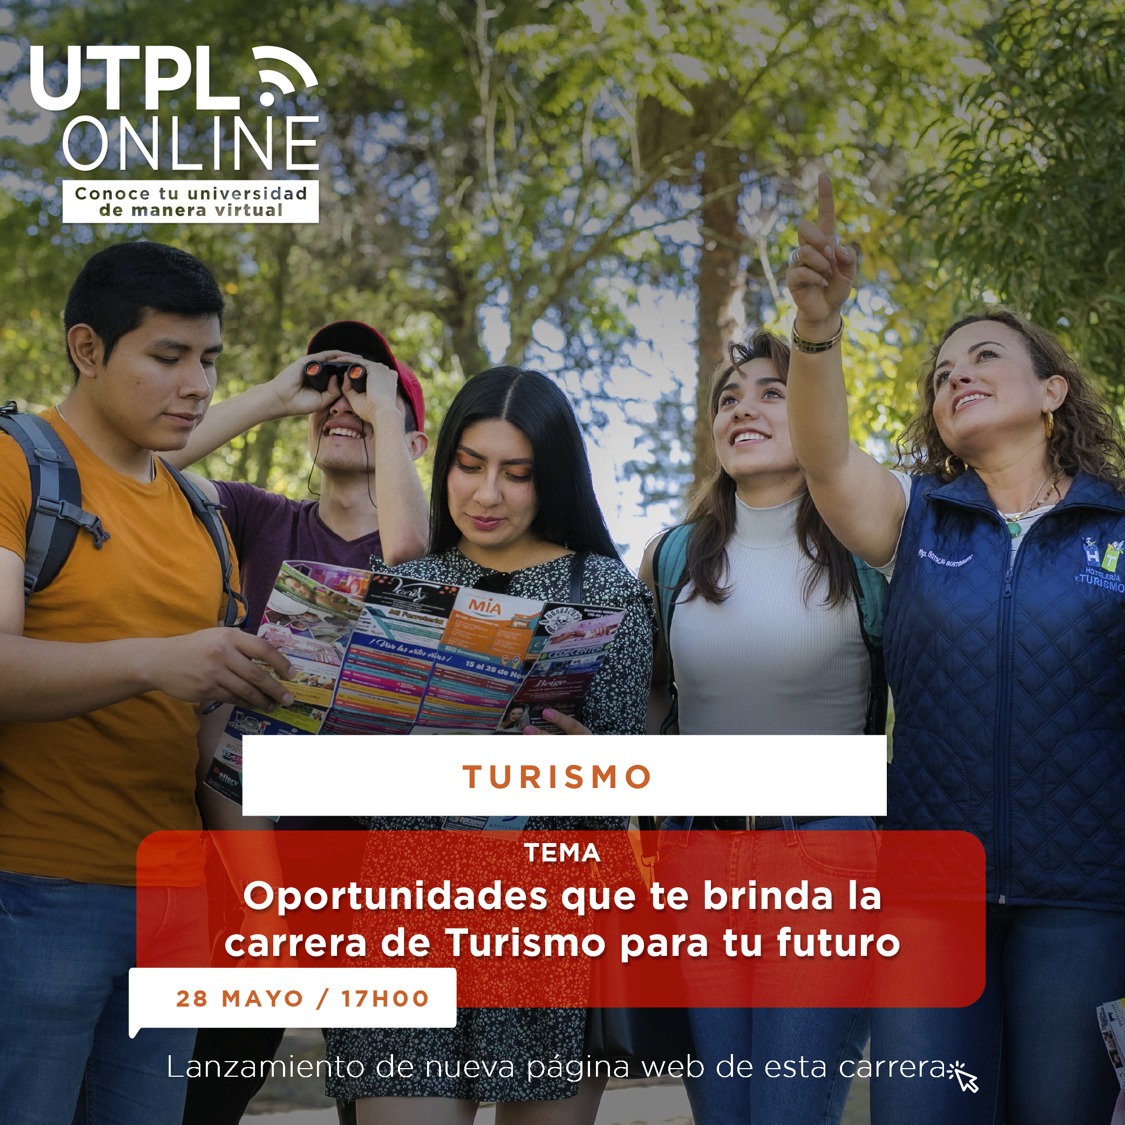 Oportunidades que te brinda la carrera de Turismo para tu futuro | UTPL